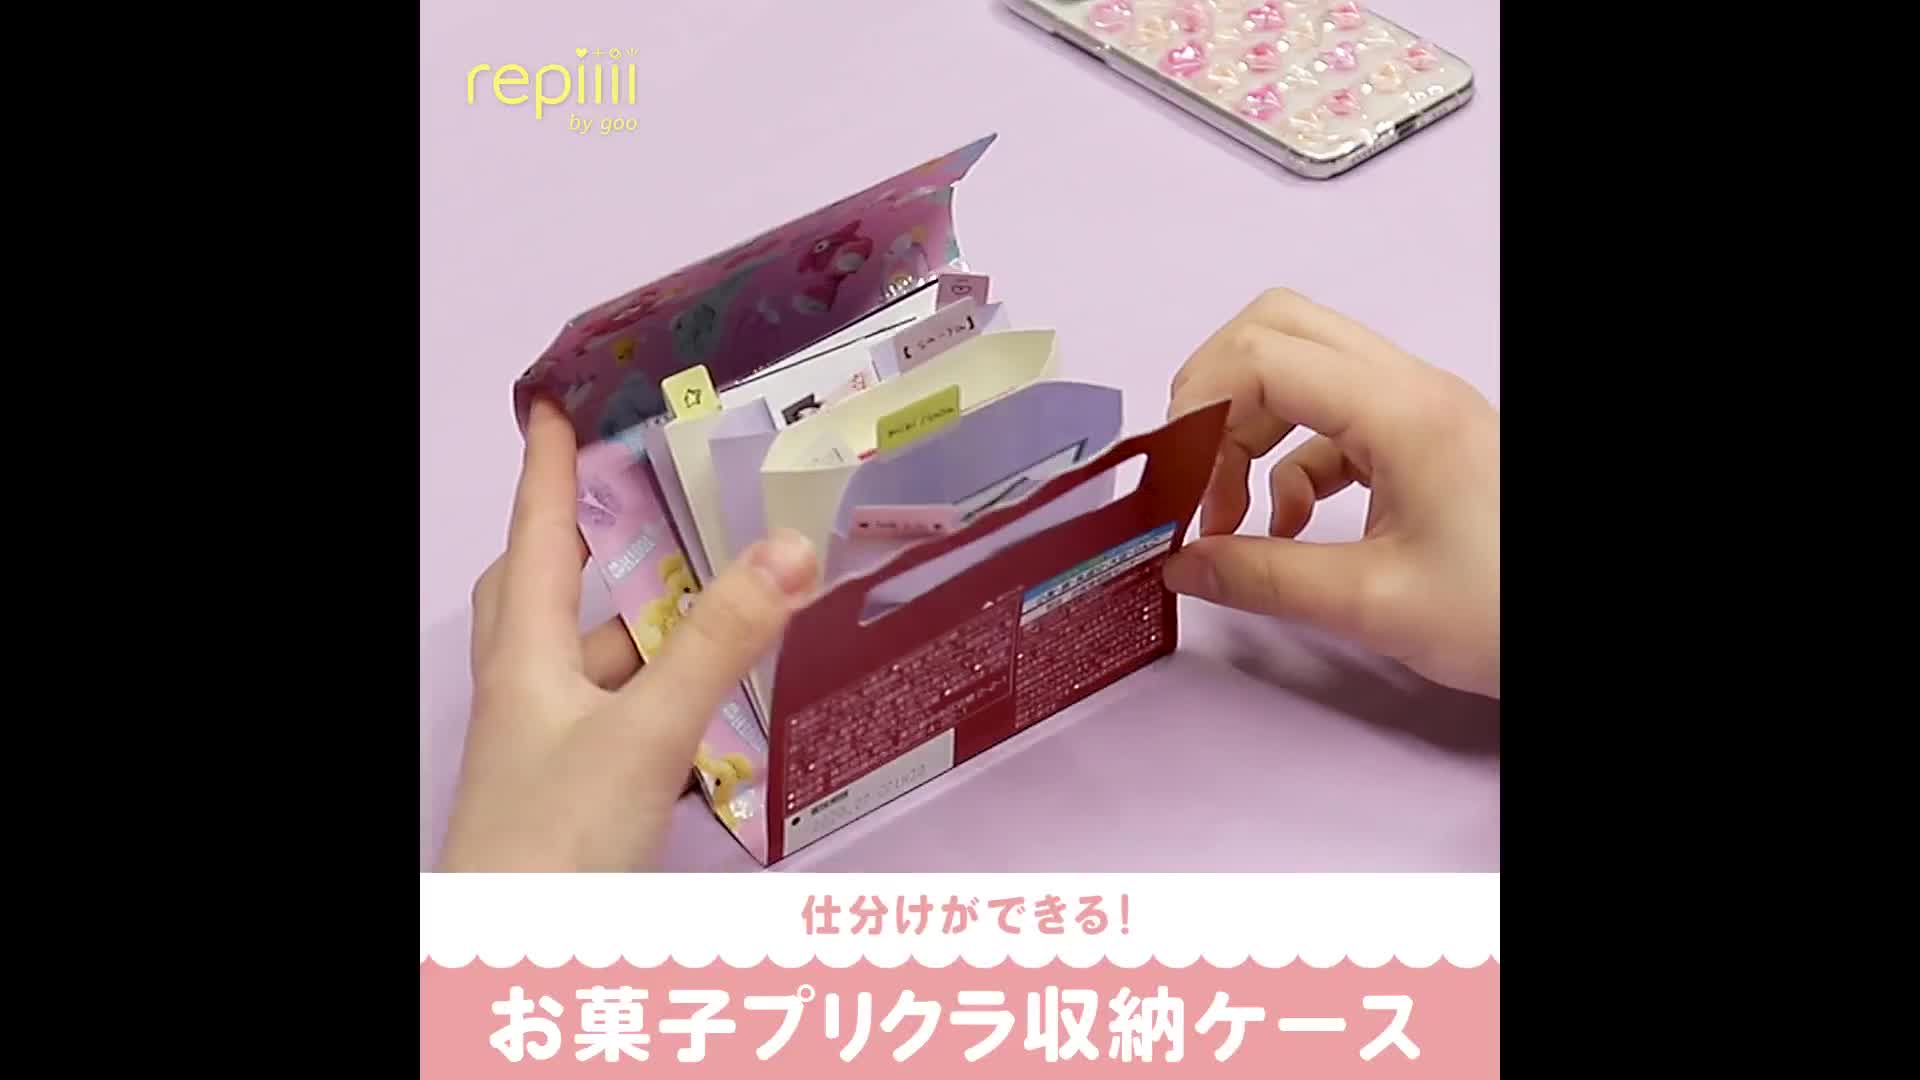 仕分けができる お菓子プリクラ収納ケース Repiiii By Goo レピー Yahoo Japan